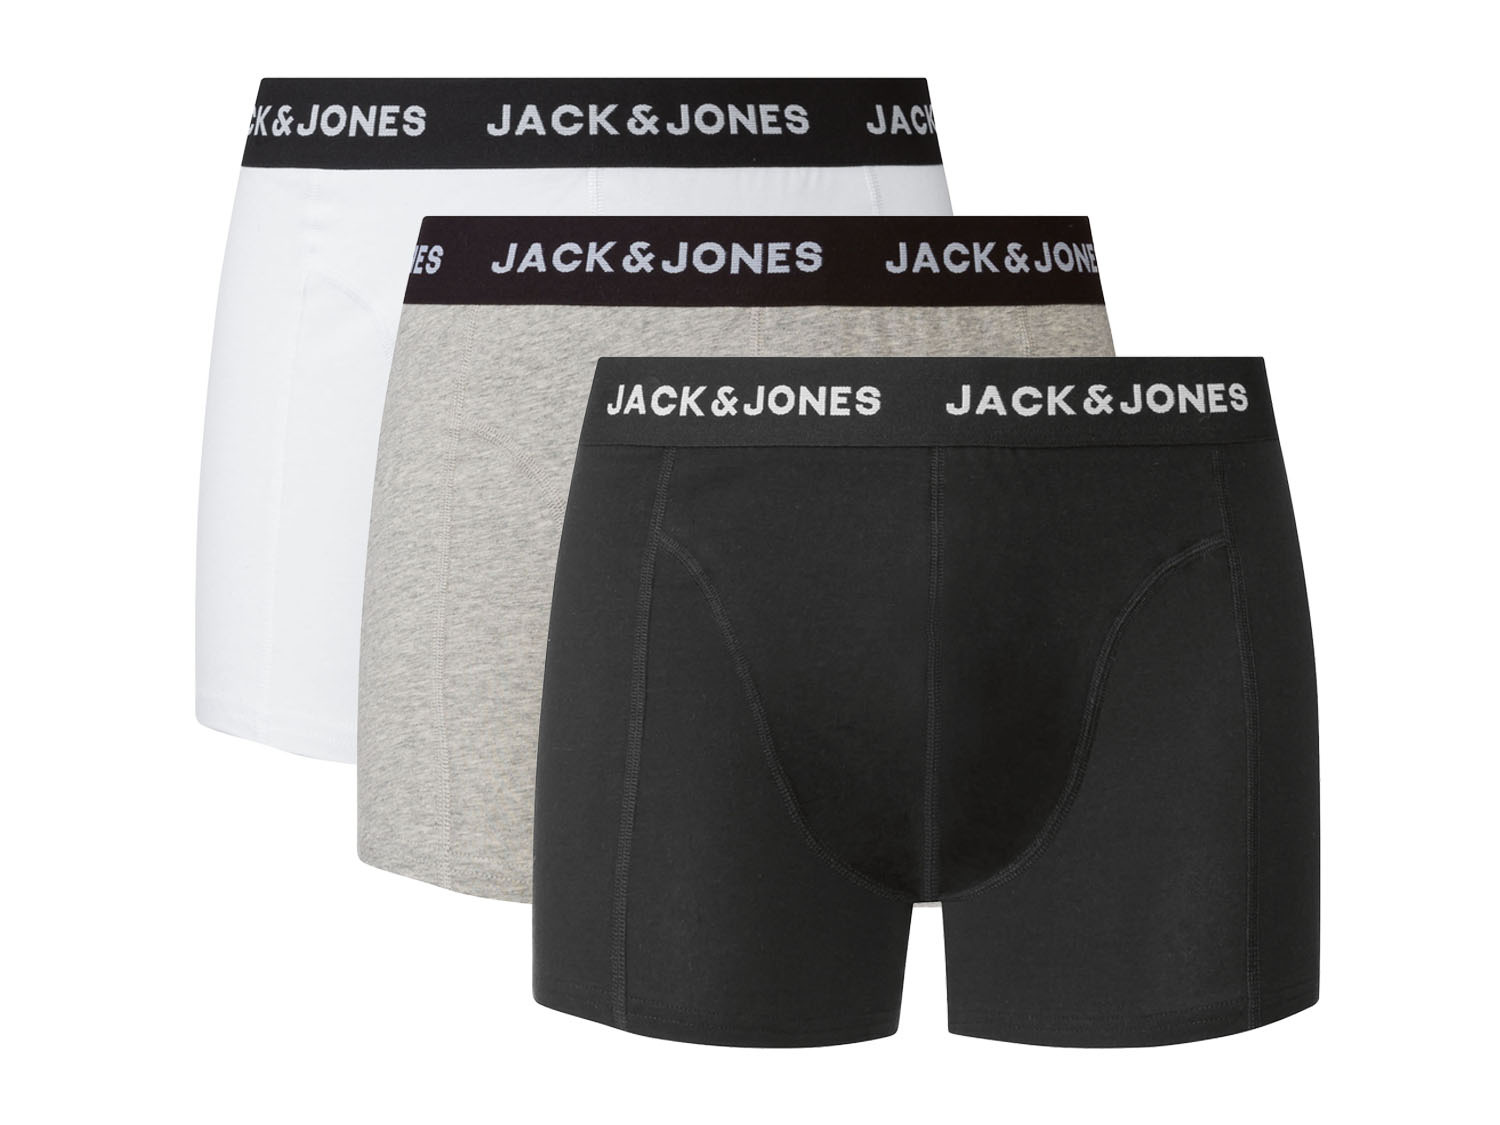 Gelijkenis Nationaal volkslied Conciërge Jack & Jones 3 heren boxershorts online kopen | LIDL